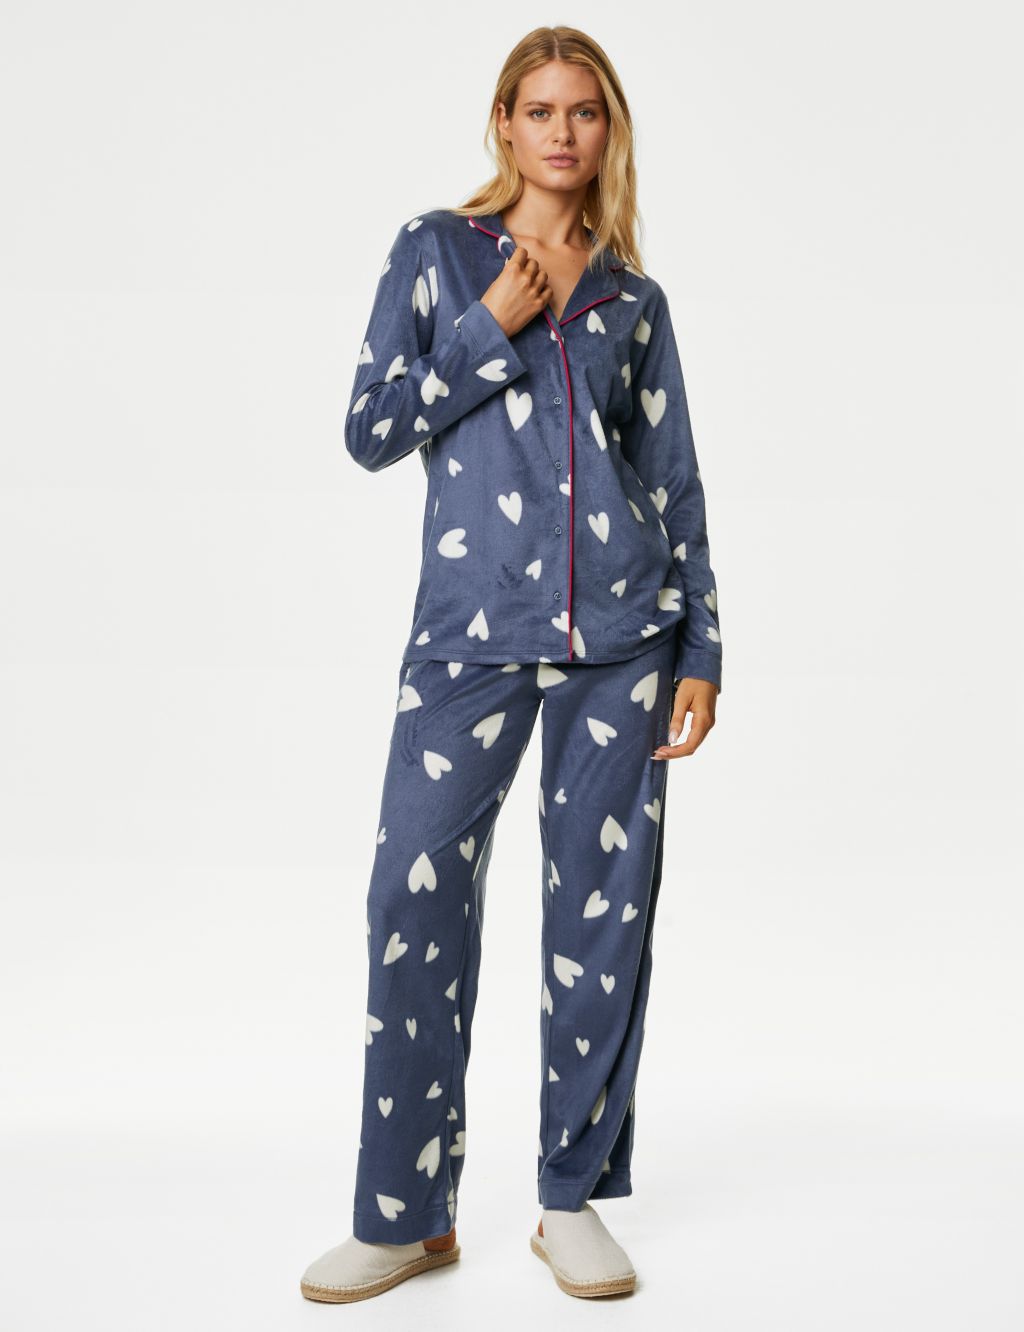 Fleece Heart Print Pyjama Set image 1